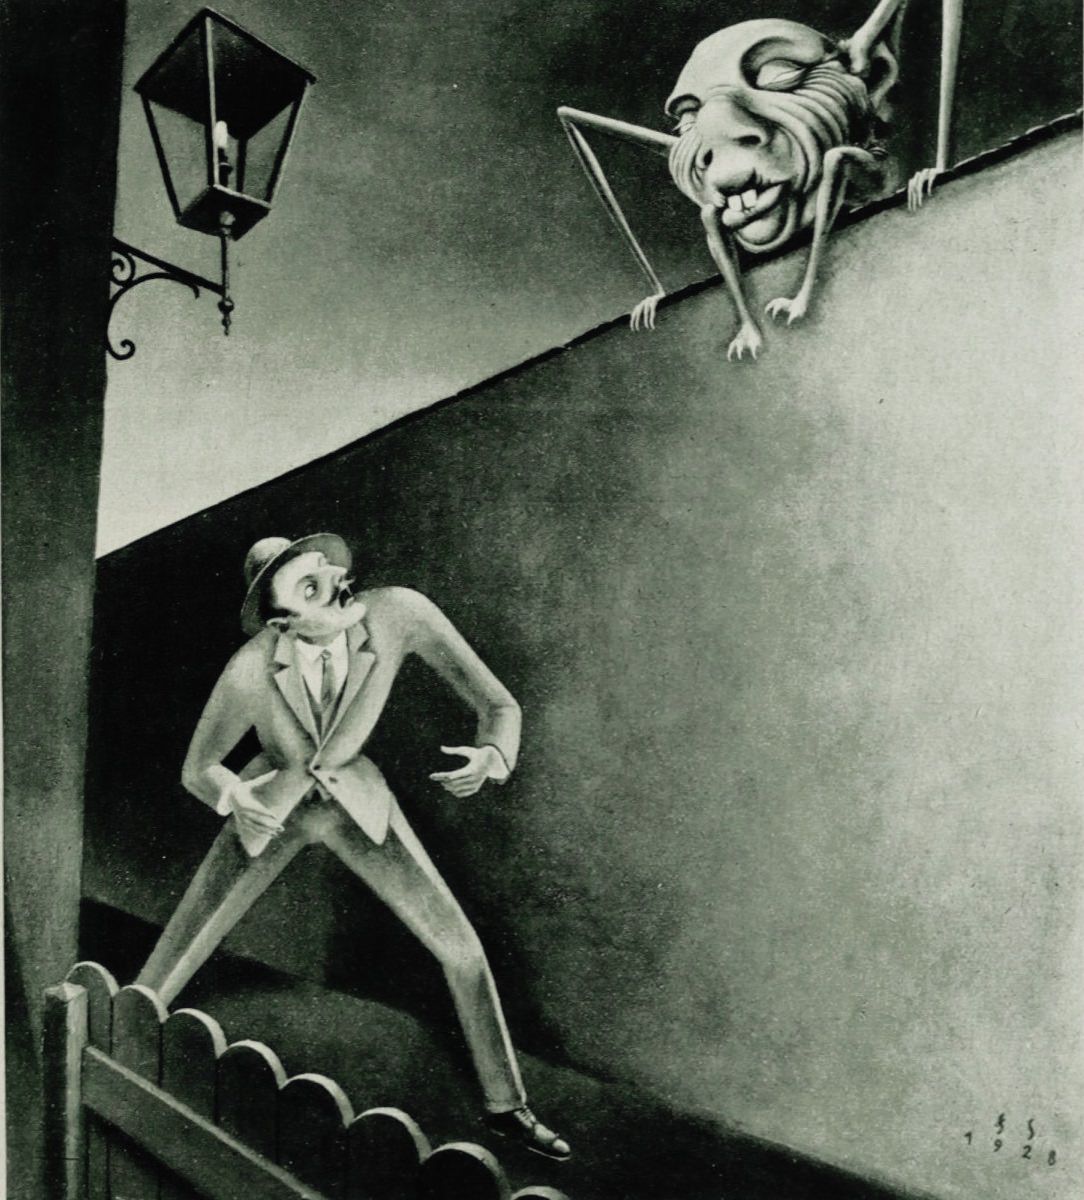 Franz Sedlacek (1891-1945), ‘Der Kobold’, ”Die Bühne”, #218, 1929.